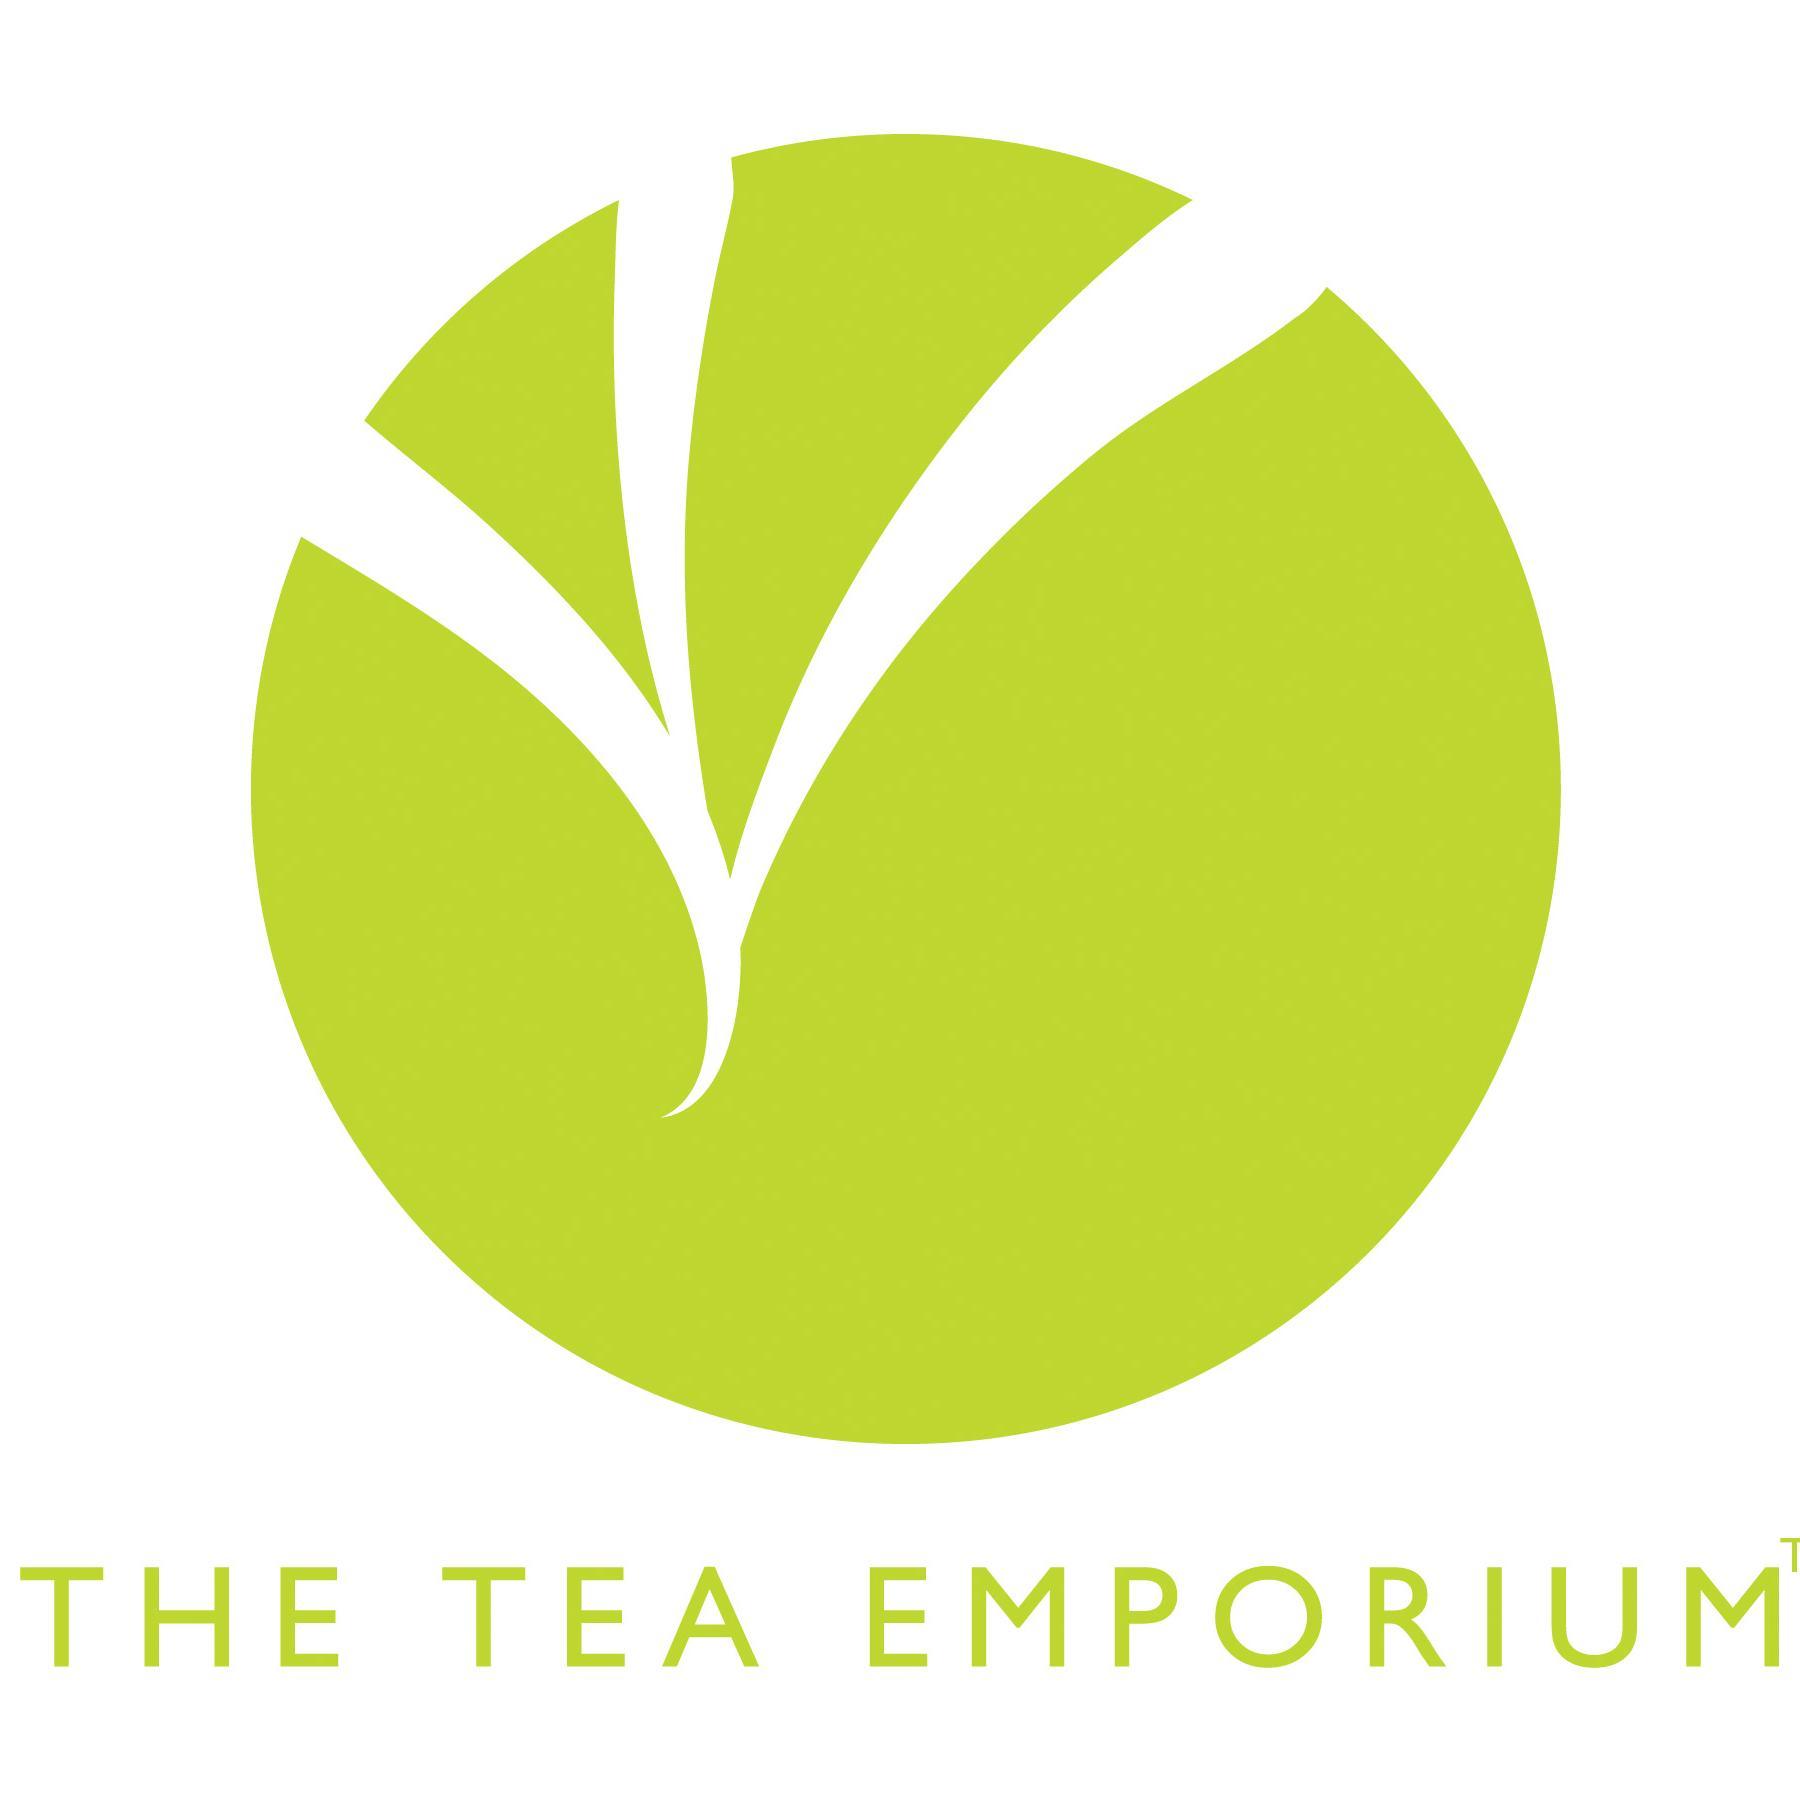 The Tea Emporium